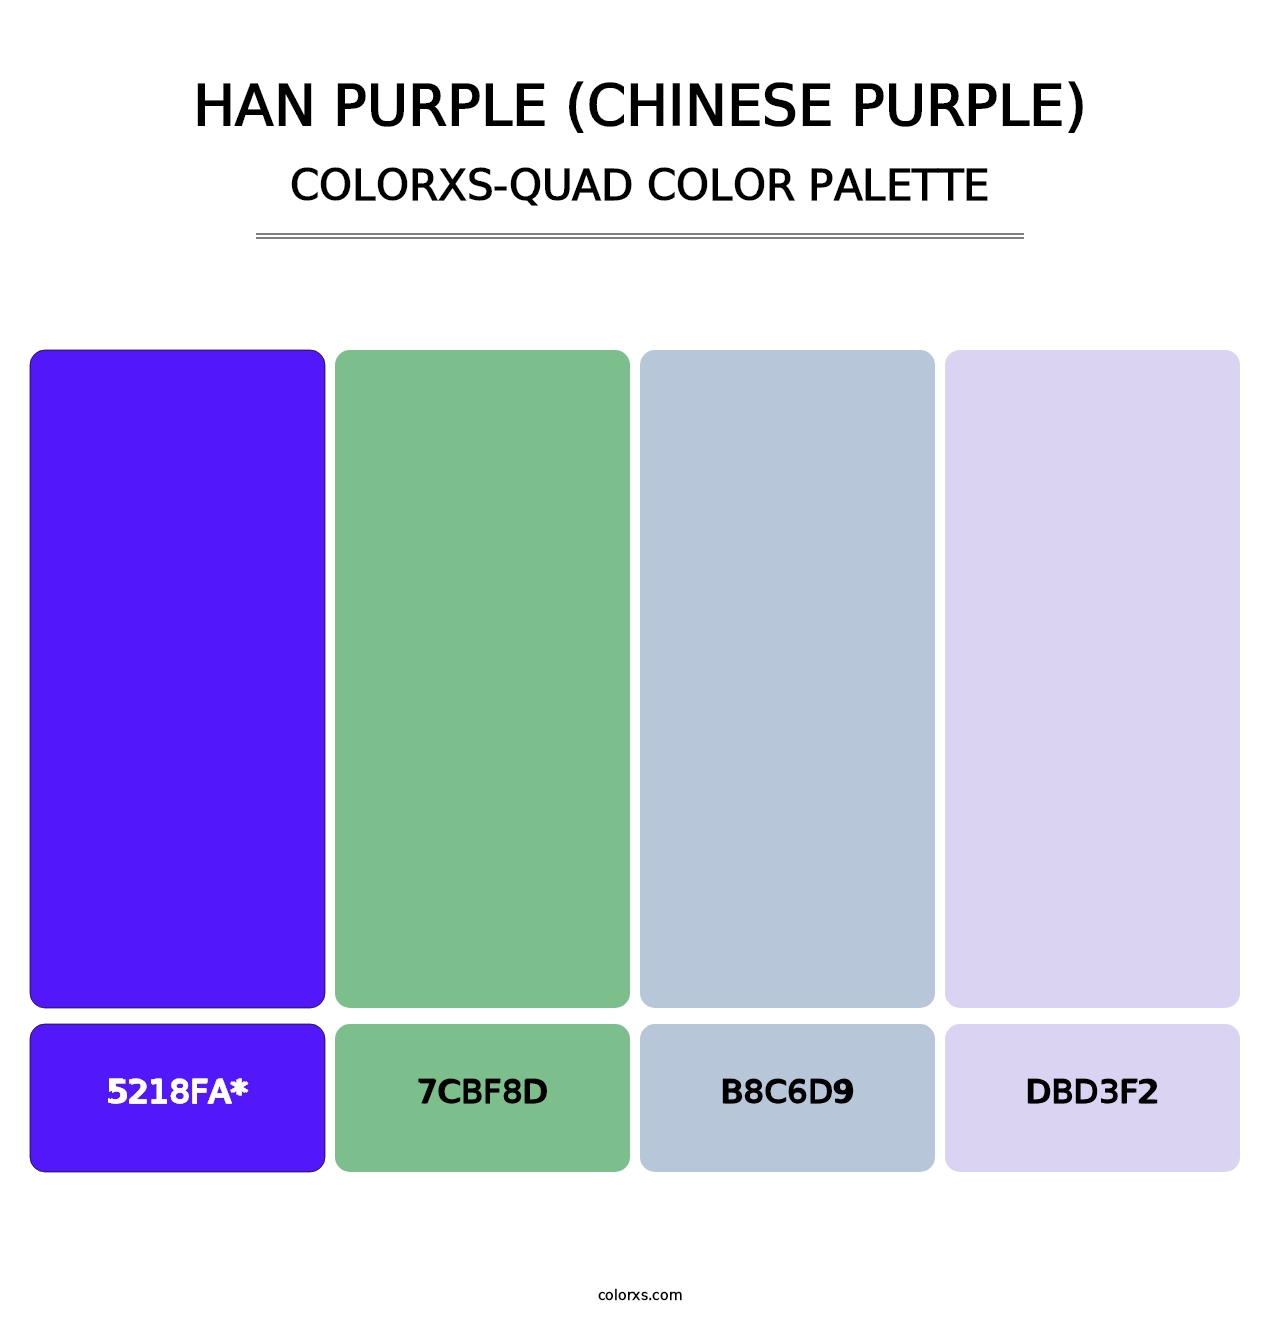 Han Purple (Chinese Purple) - Colorxs Quad Palette